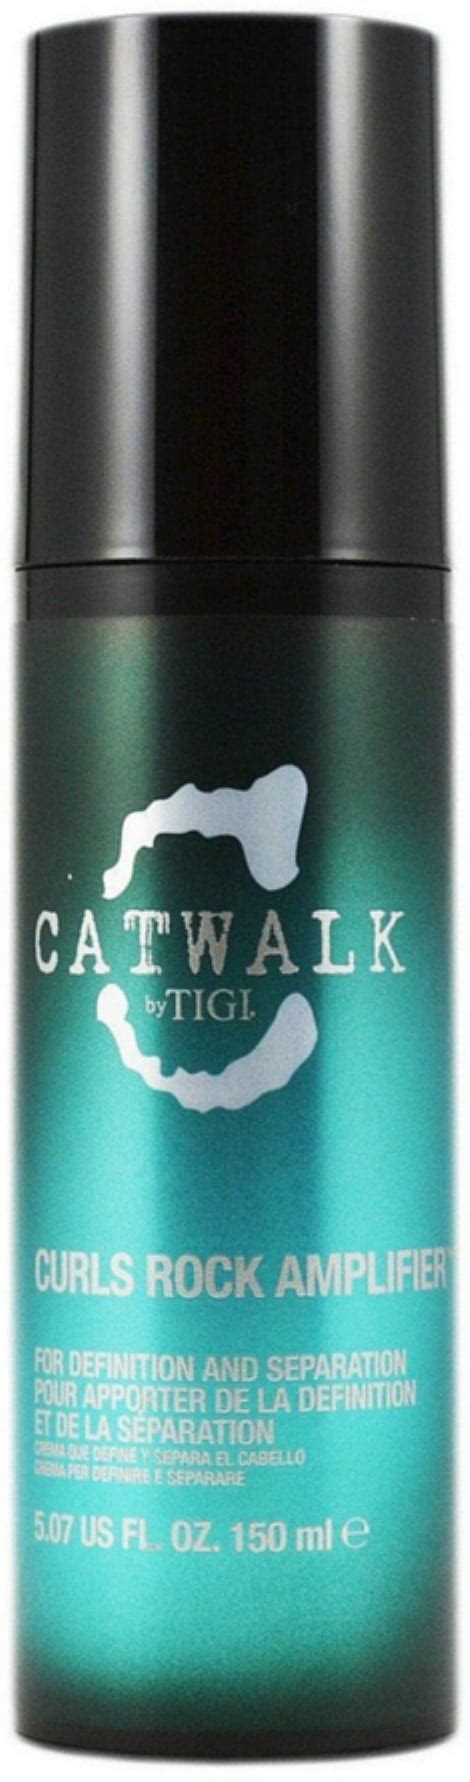 TIGI Catwalk Curls Rock Amplifier 5 07 Oz Walmart Com Walmart Com